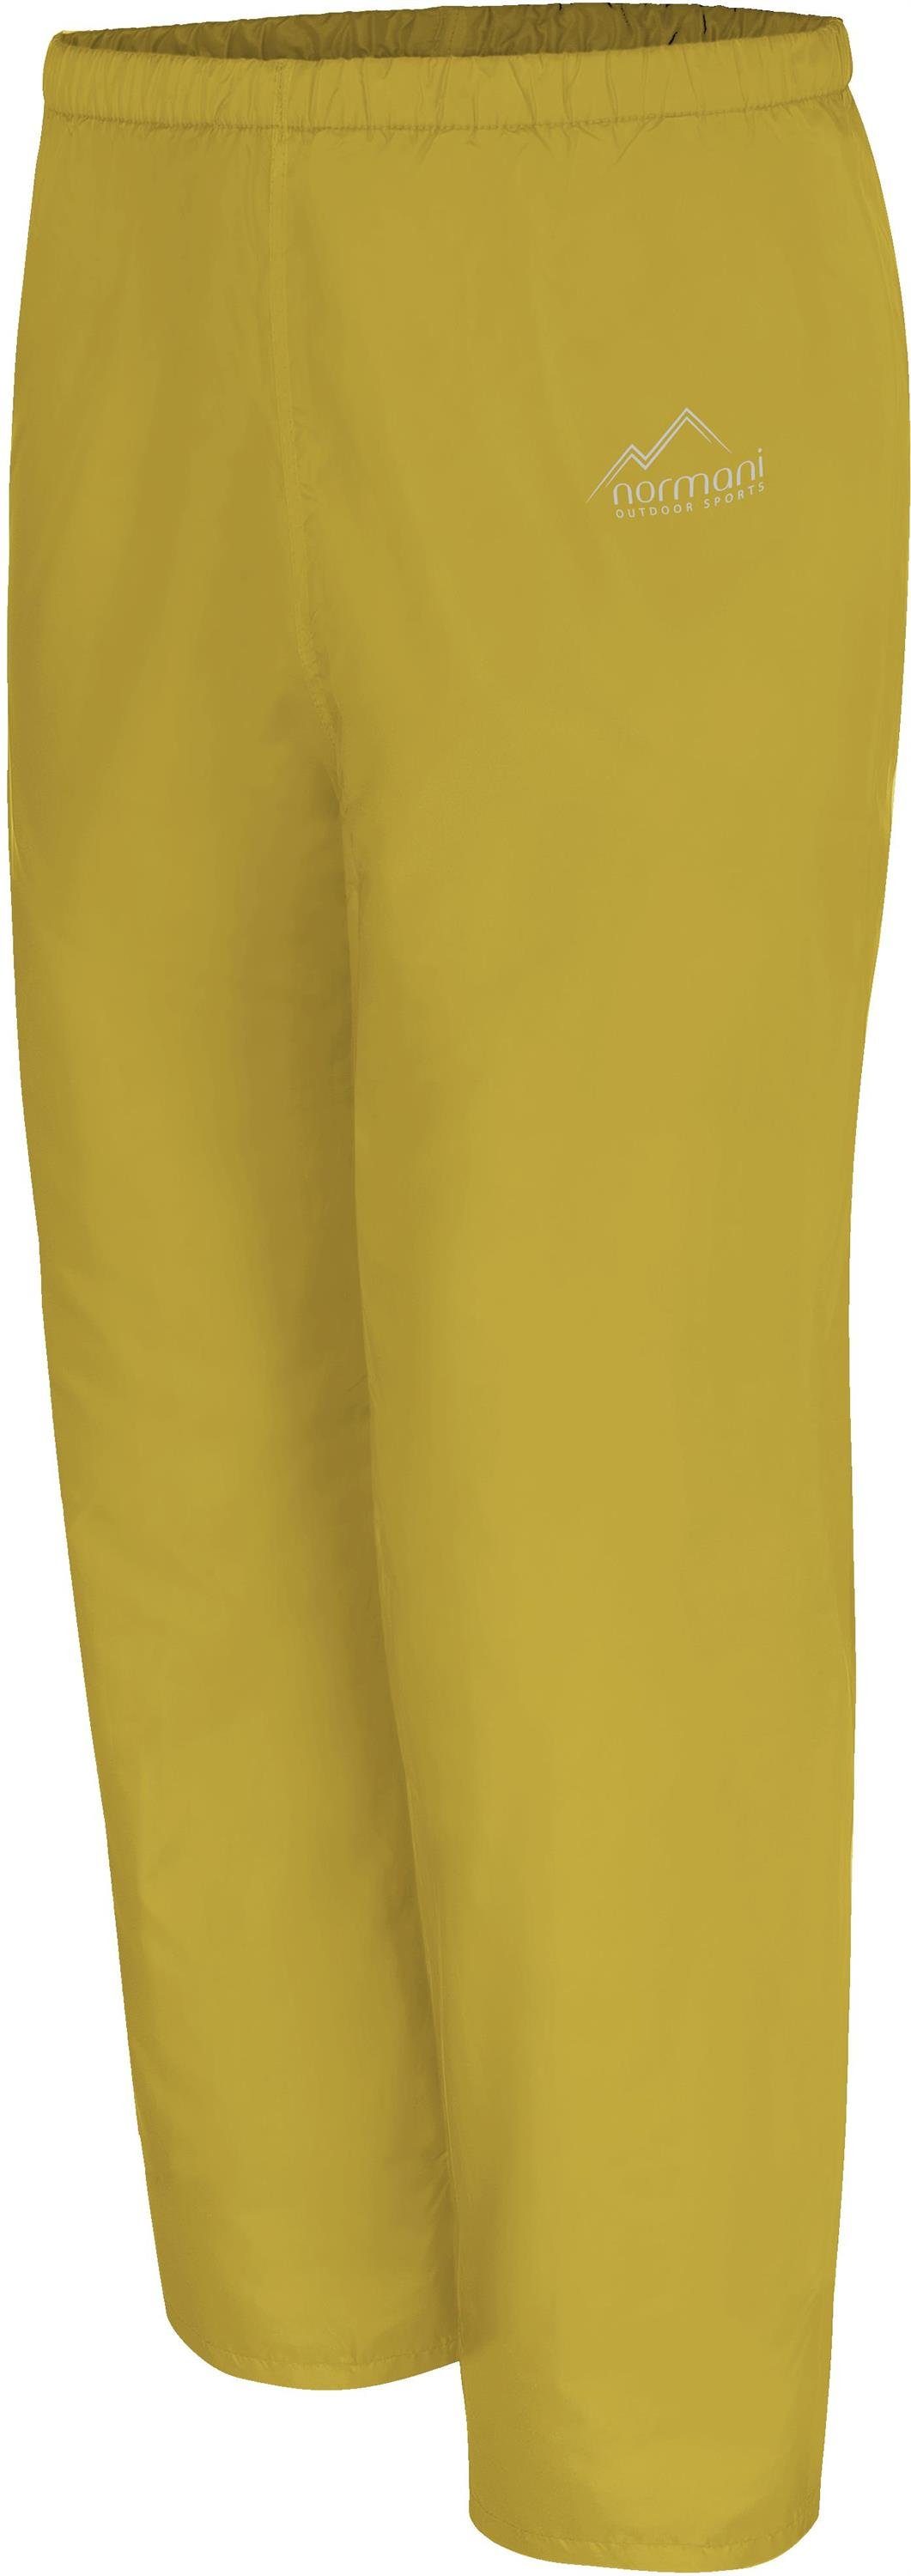 Kinder normani Übergangshose Regenhose Kinderhose mit und Matschhose Regenhose Wasserdichte Fleecefutter Gelb für Mädchen Junge